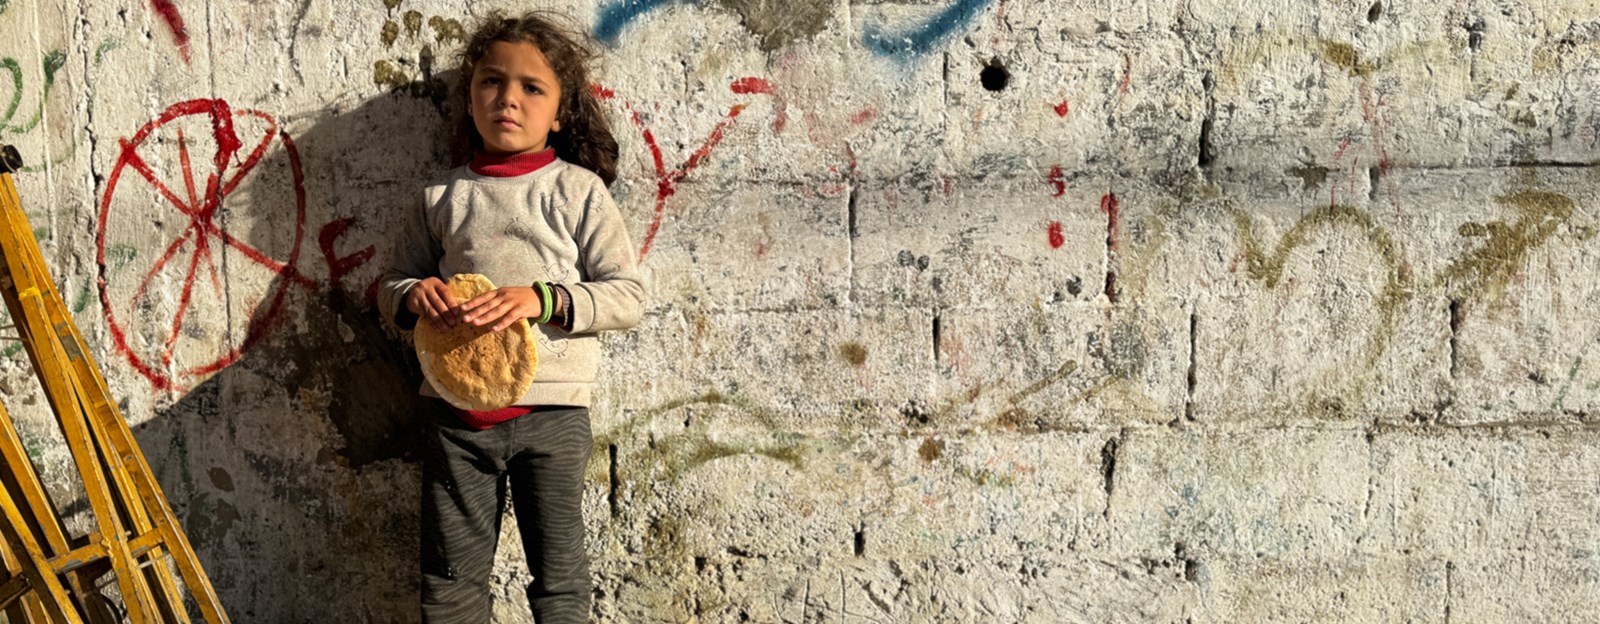 Et barn står inntil en murvegg, ser i kamera og holder brød i hendene